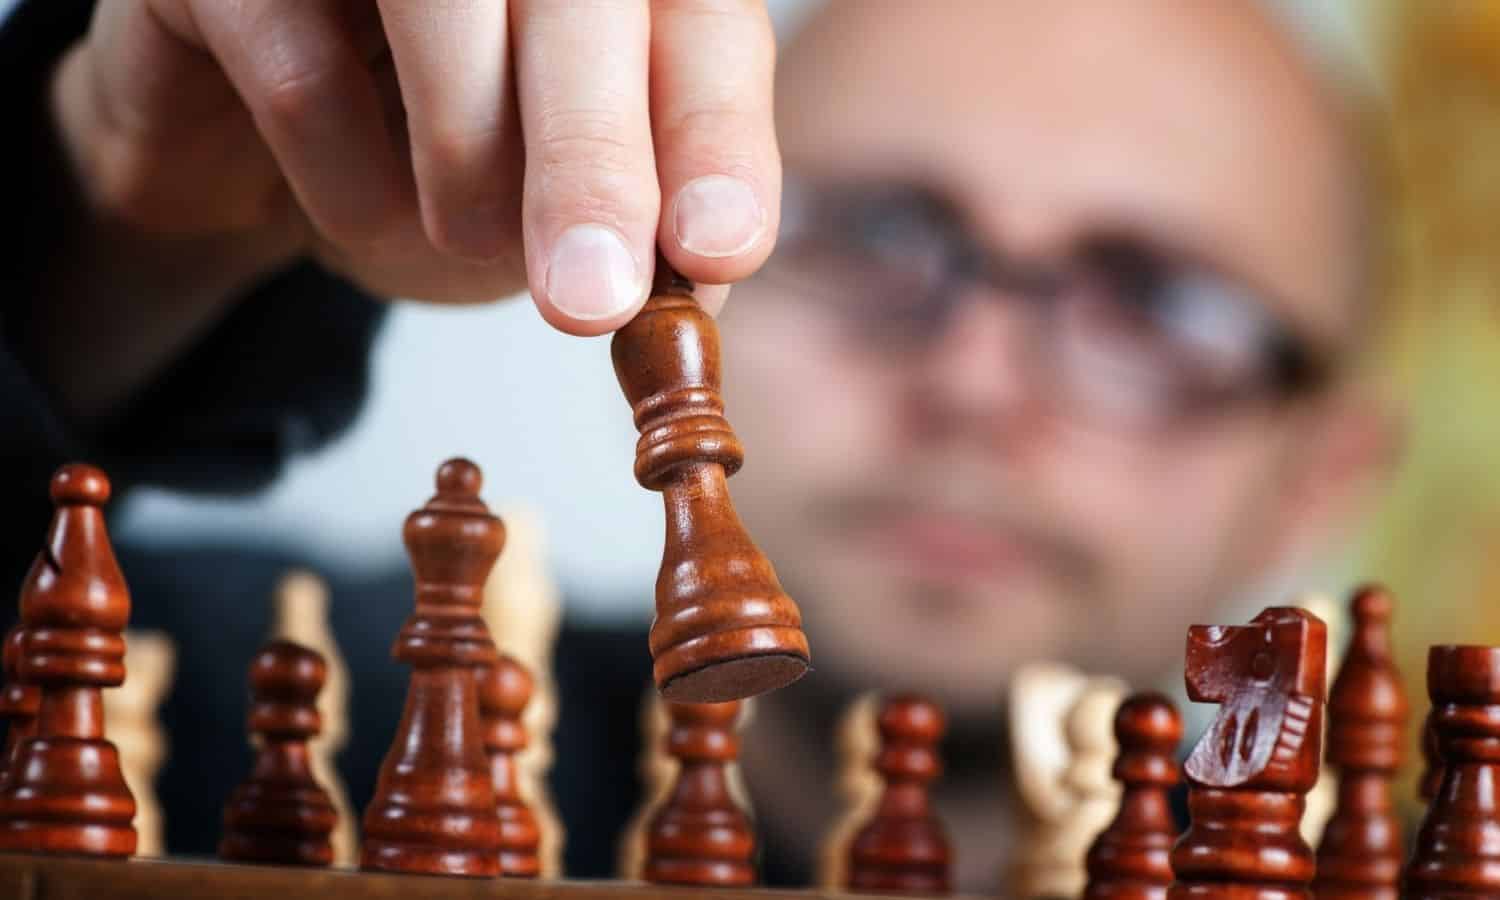 Magnus Carlsen IQ Level: Is he a Genius?